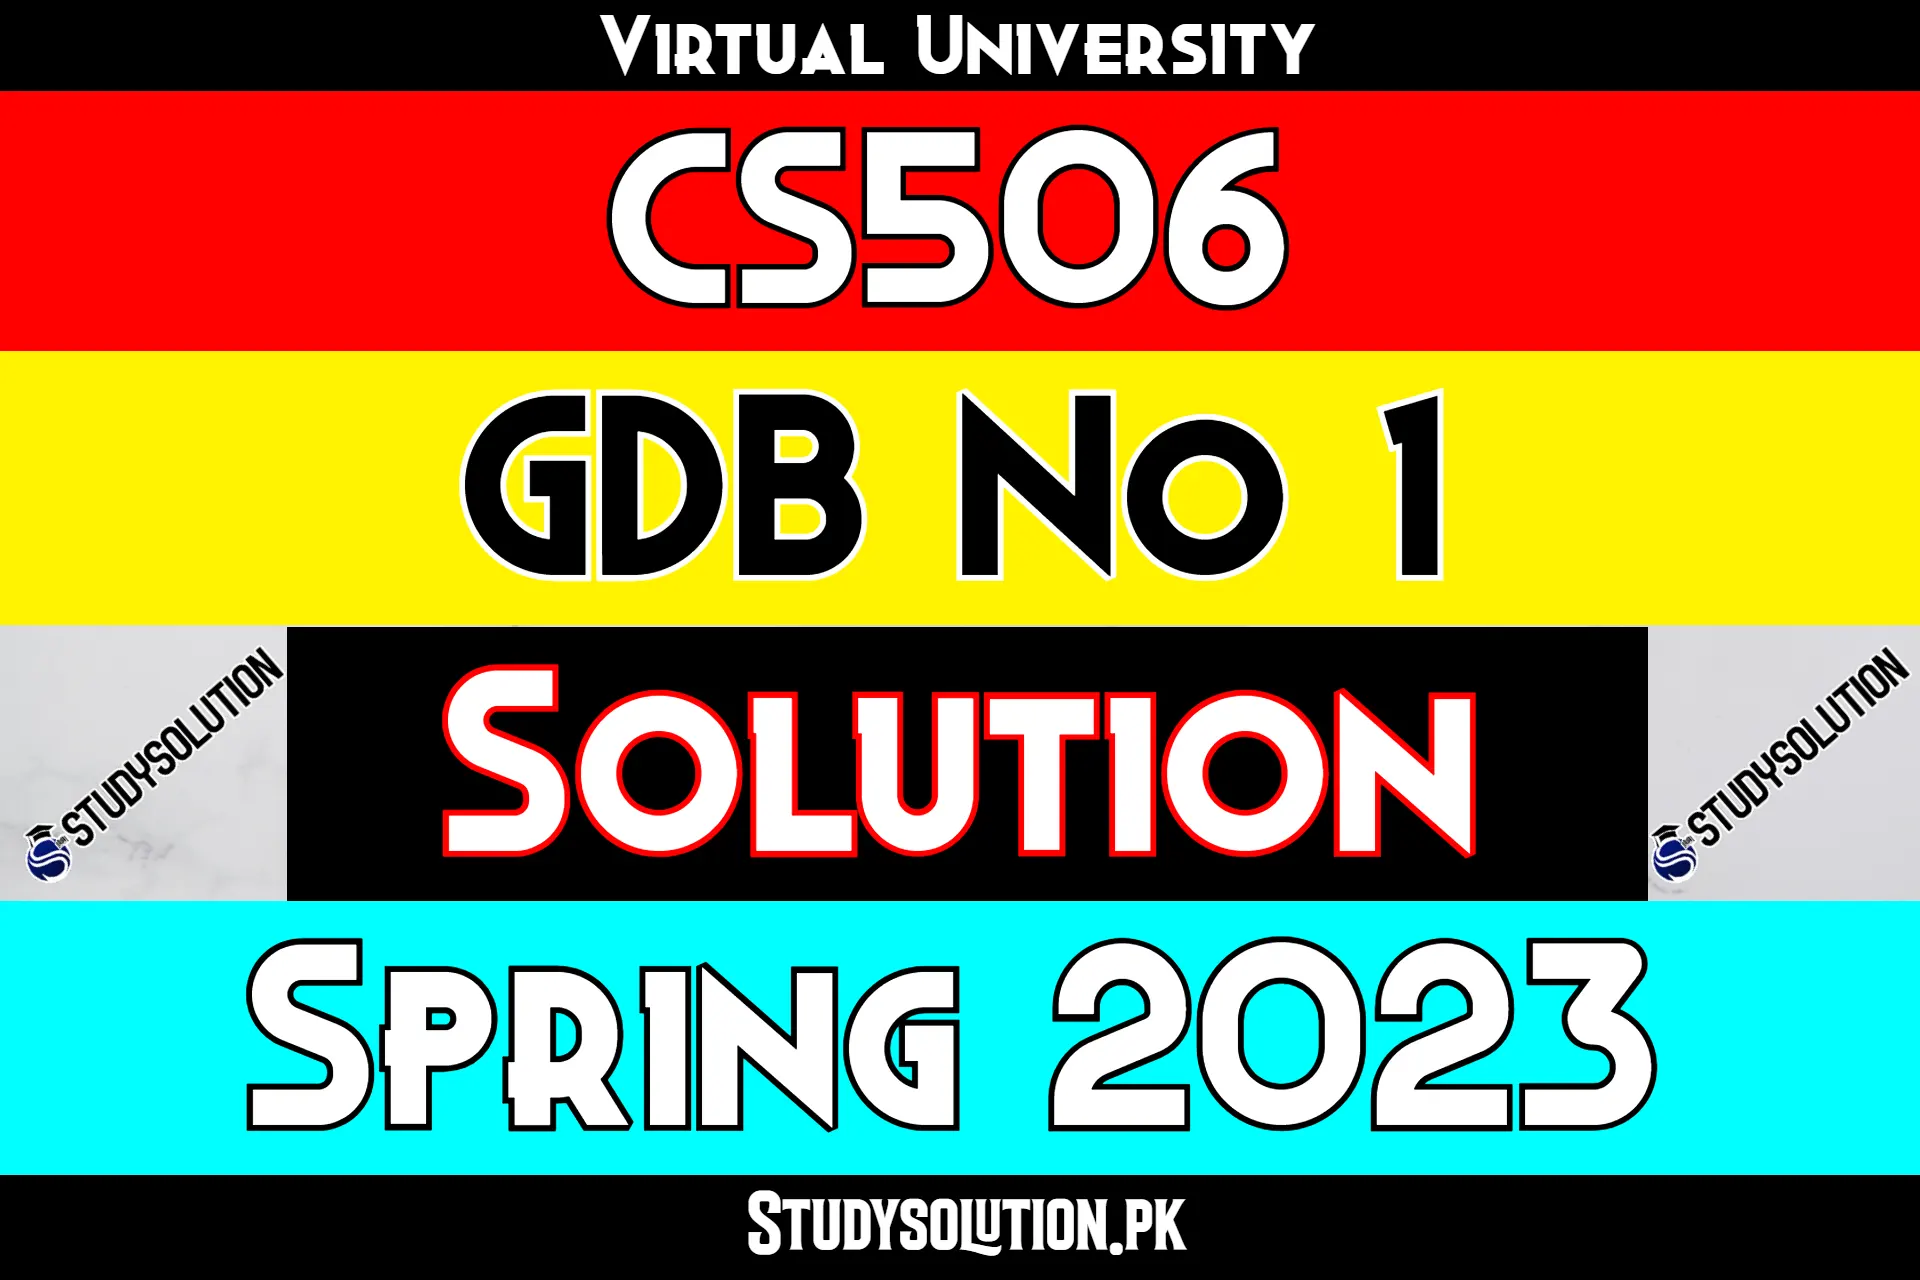 CS506 GDB No 1 Solution Spring 2023